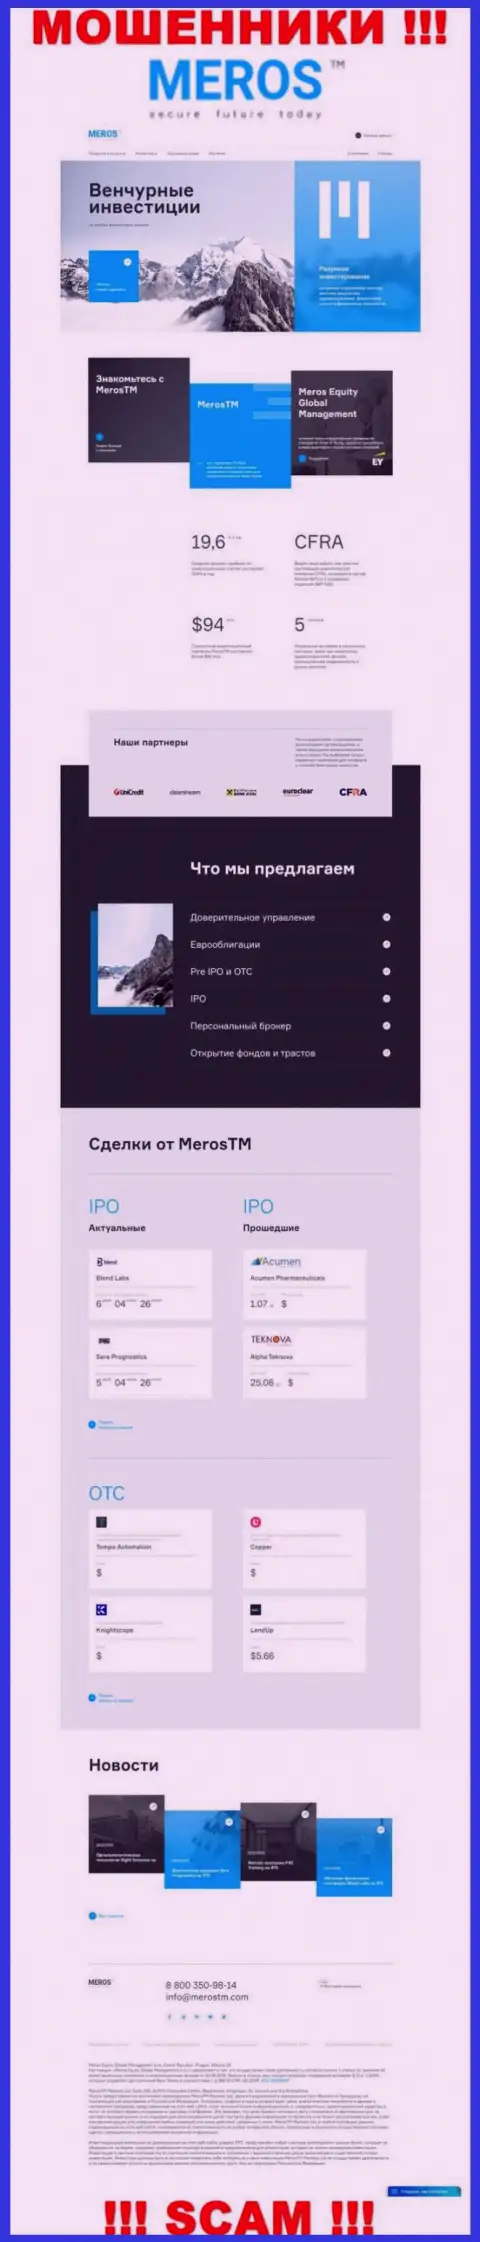 Обзор официального интернет-портала кидал MerosTM Com